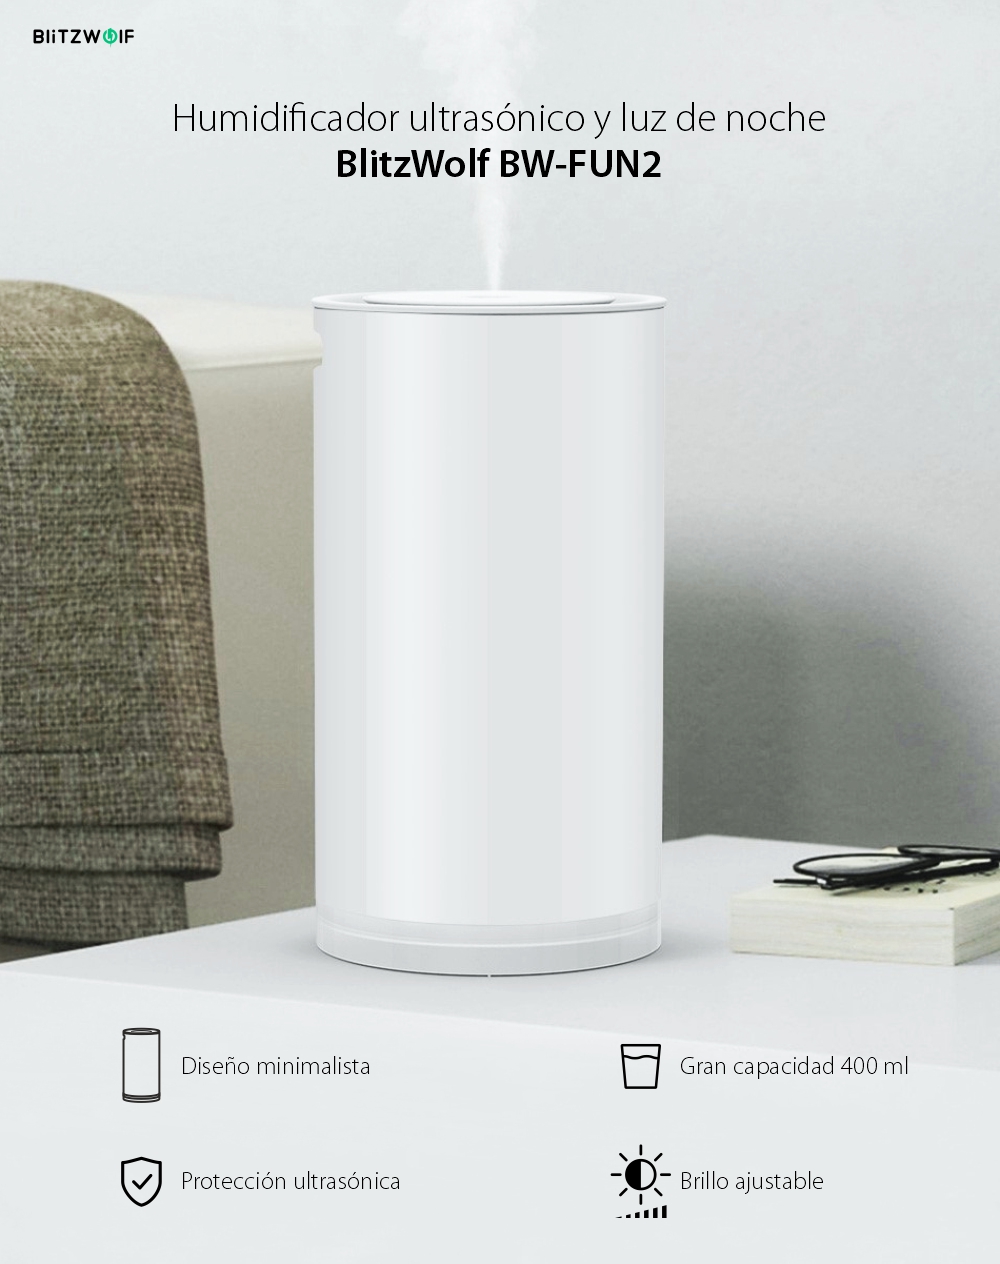 Humidificador ultrasónico con luz de noche BlitzWolf BW-FUN2, Capacidad 400 mL, Brillo ajustable